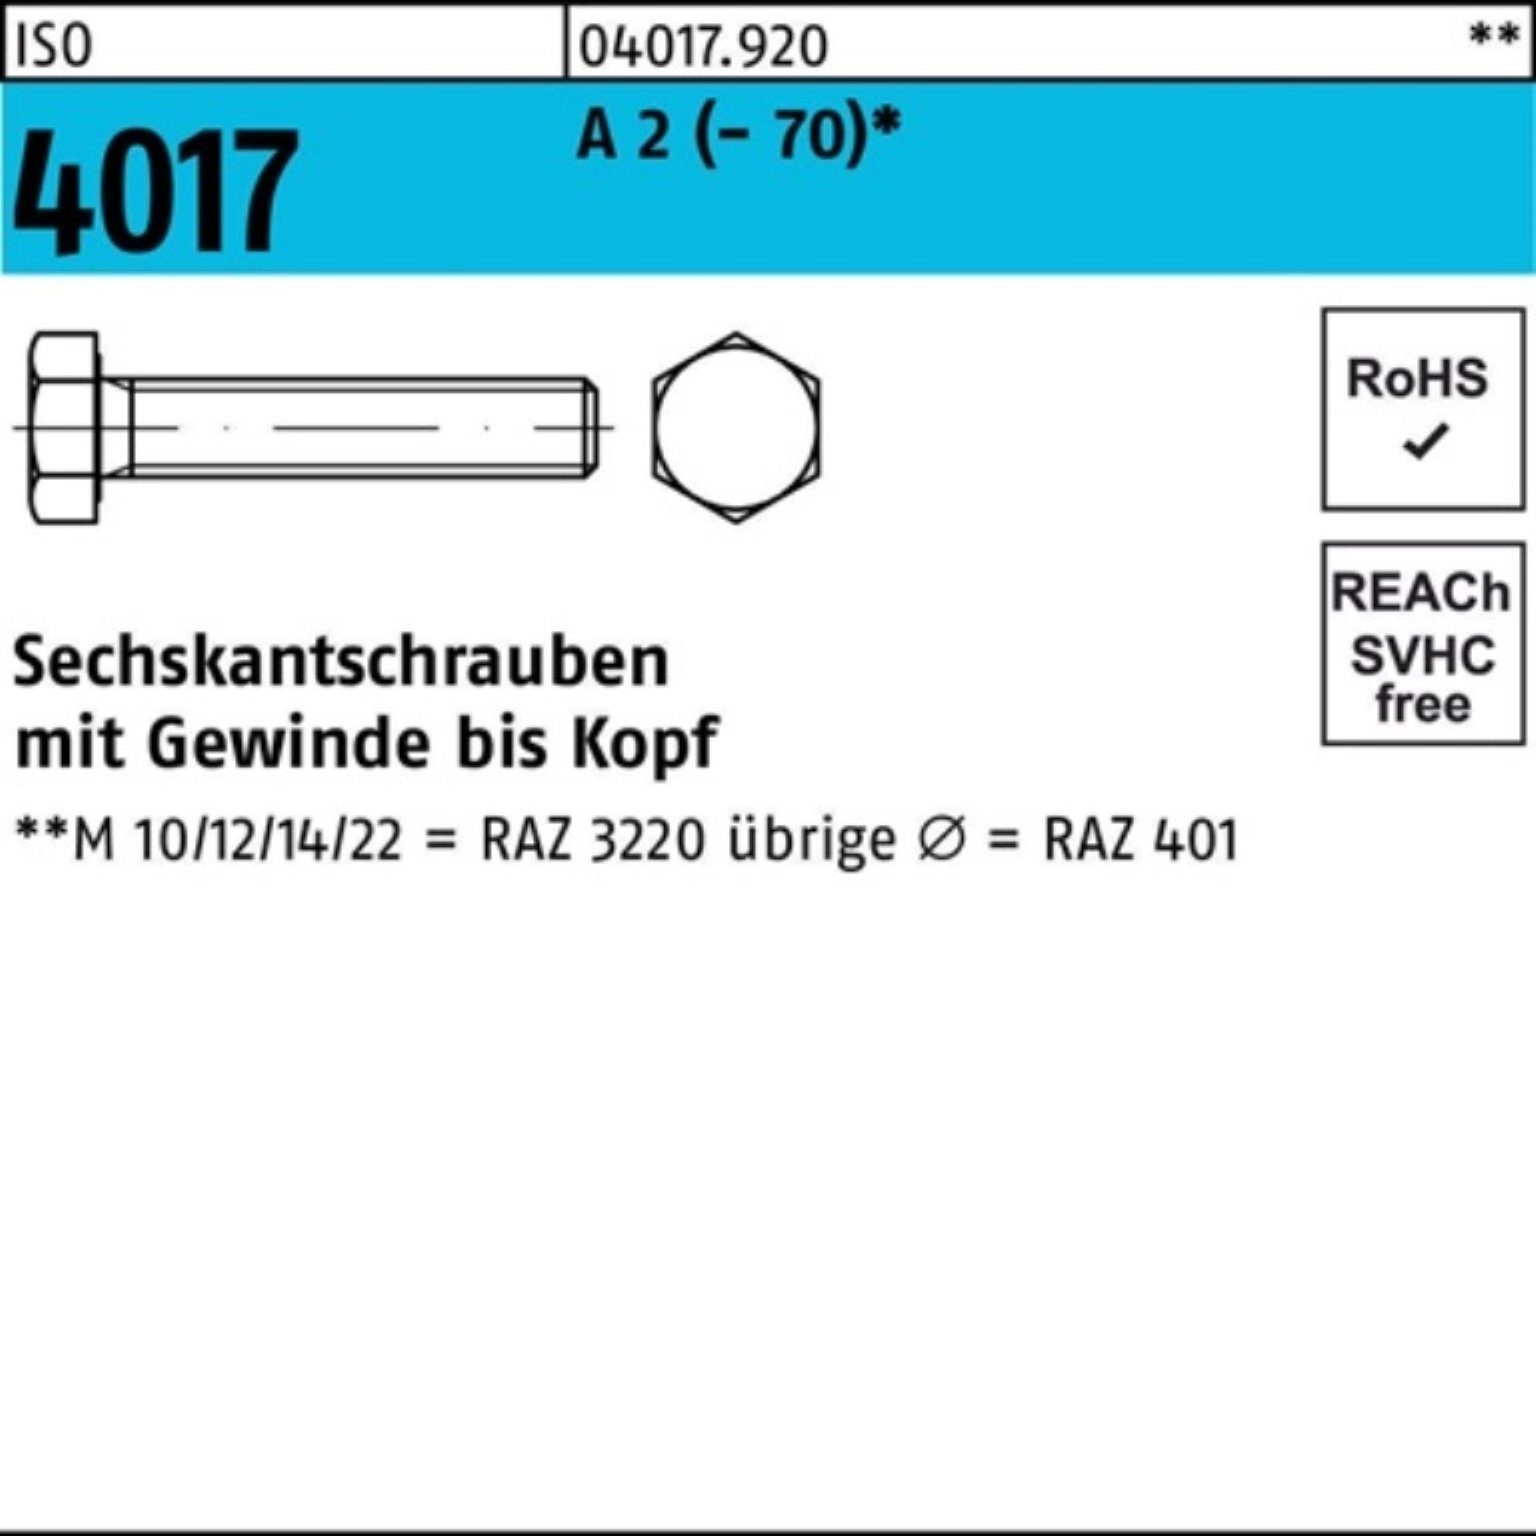 Bufab Sechskantschraube 100er Pack Sechskantschraube ISO 4017 VG M10x 65 A 2 (70) 100 Stück